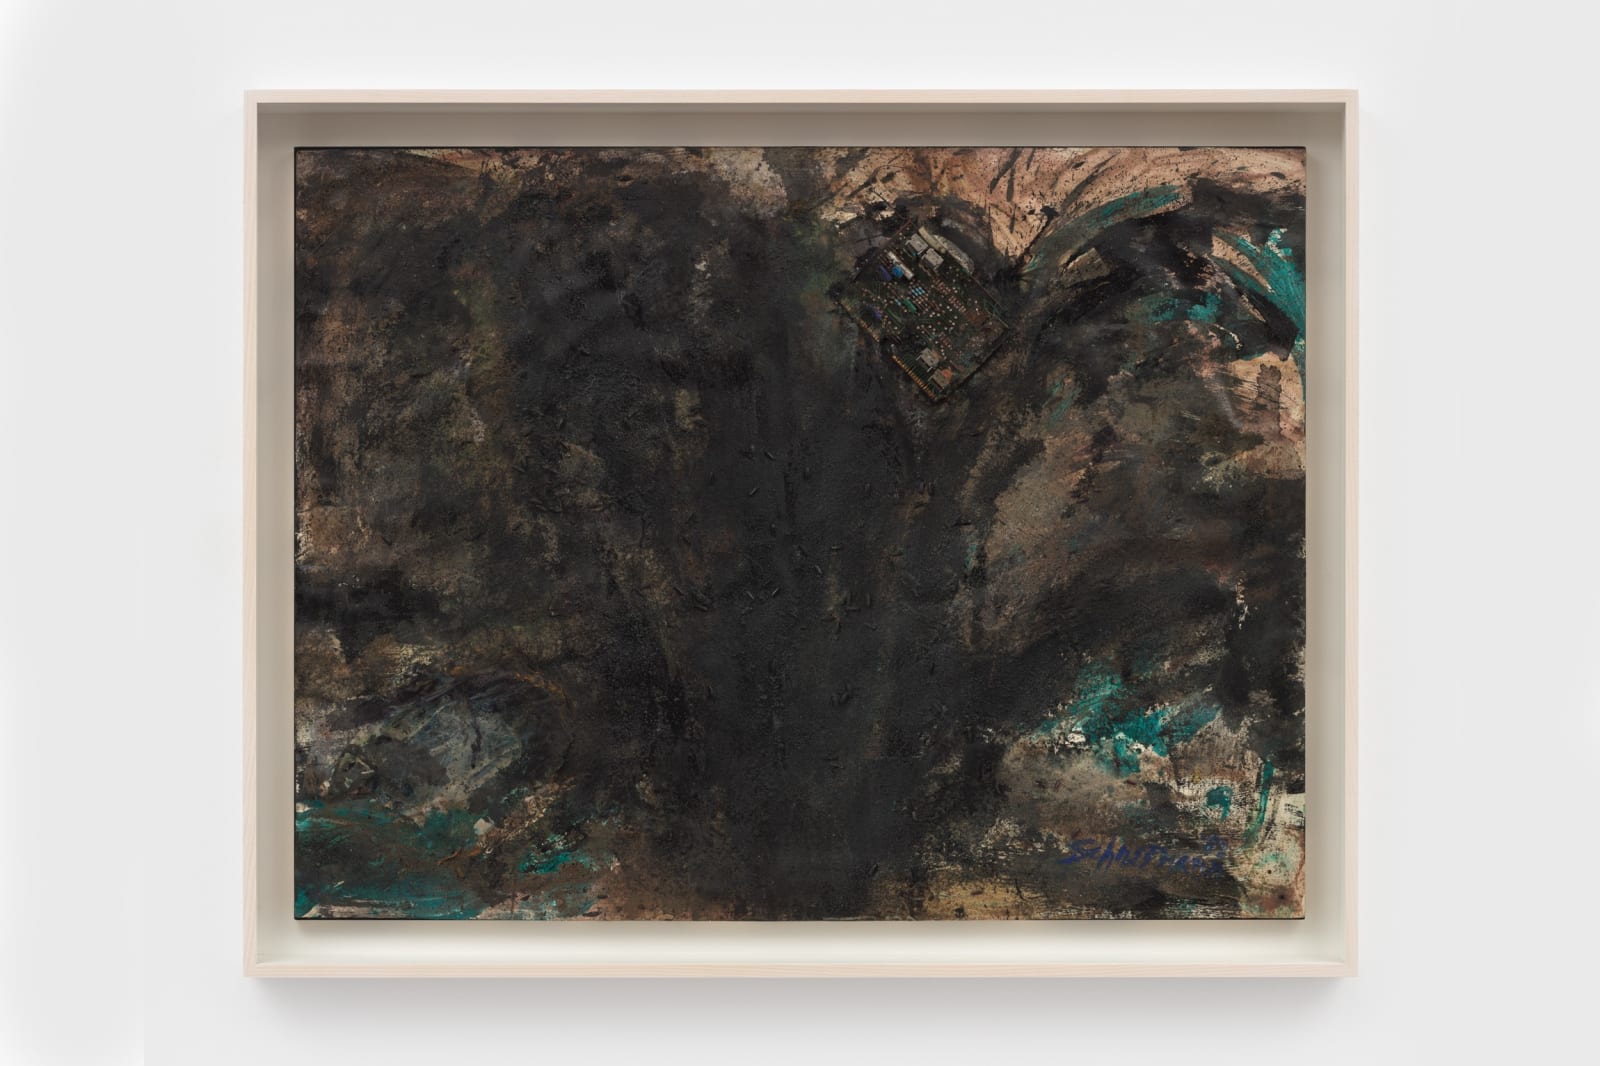 Carolee Schneemann, Untitled (Black work I from Dust series), 1988